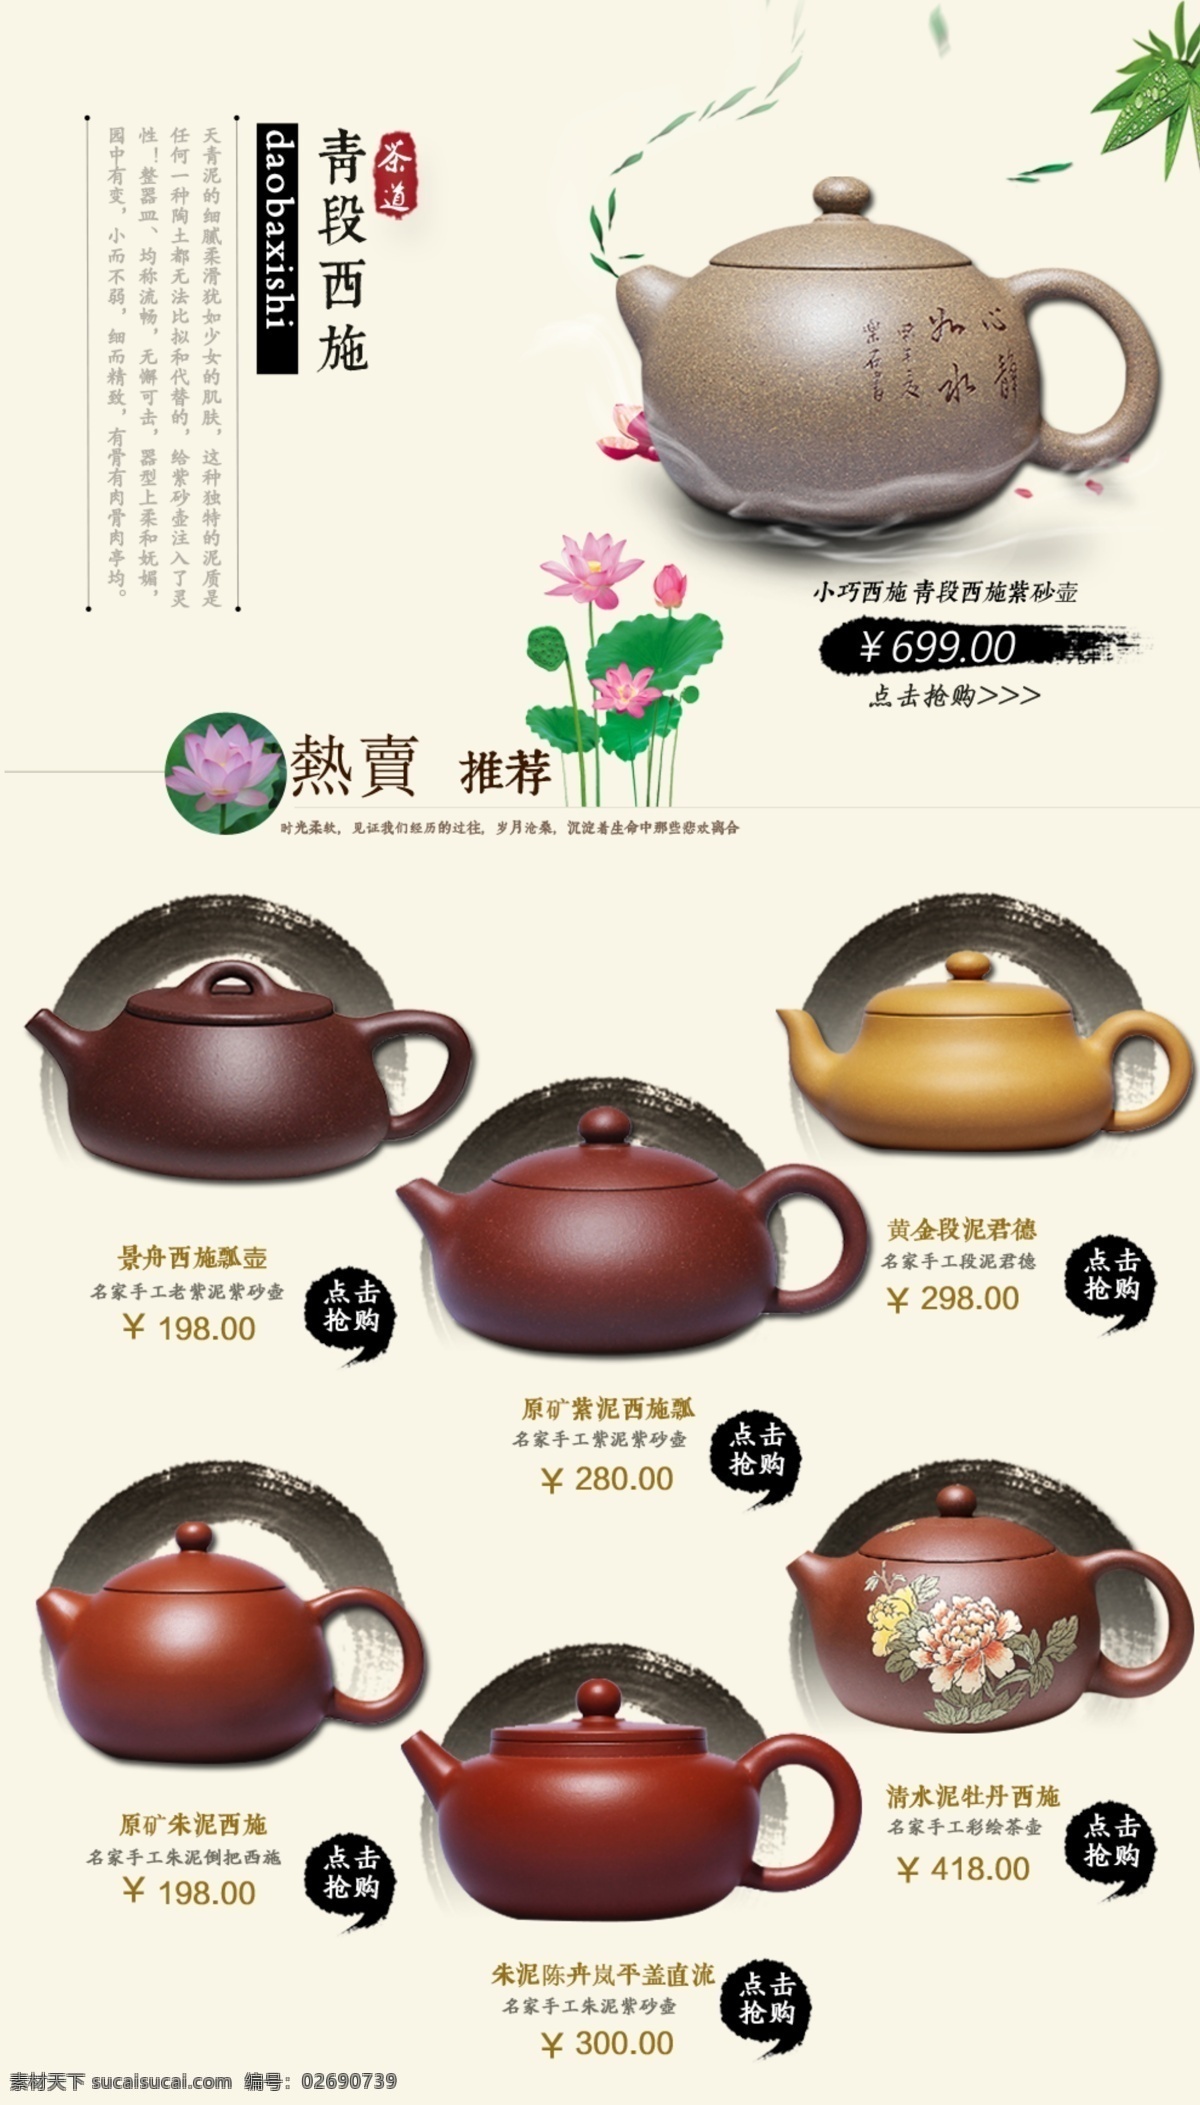 热卖 推荐 荷花 中国风 紫砂壶 原创设计 原创淘宝设计